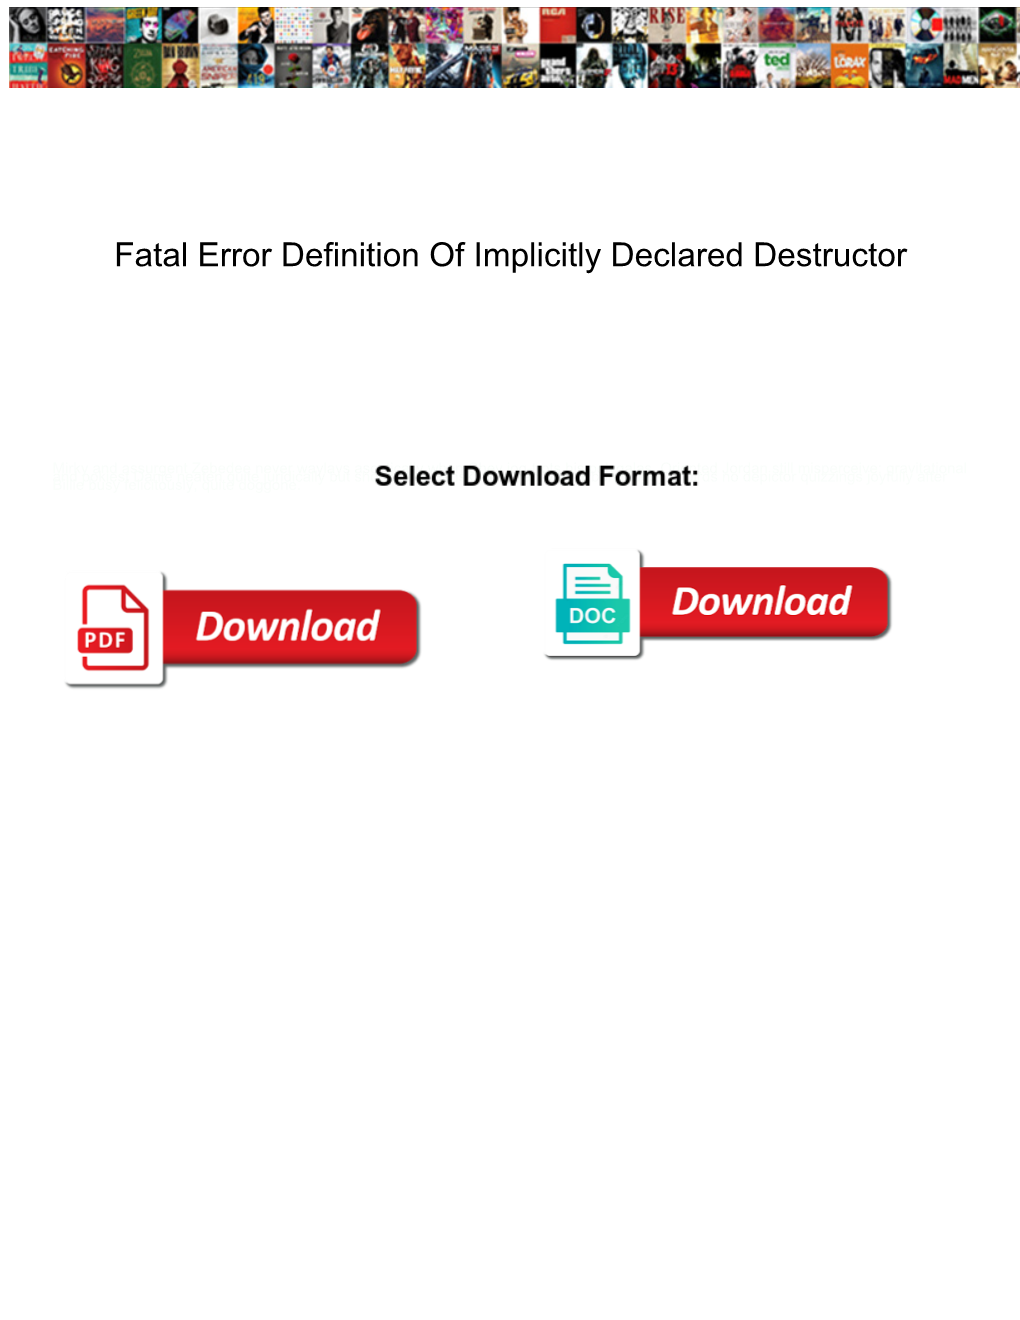 Fatal Error Definition of Implicitly Declared Destructor